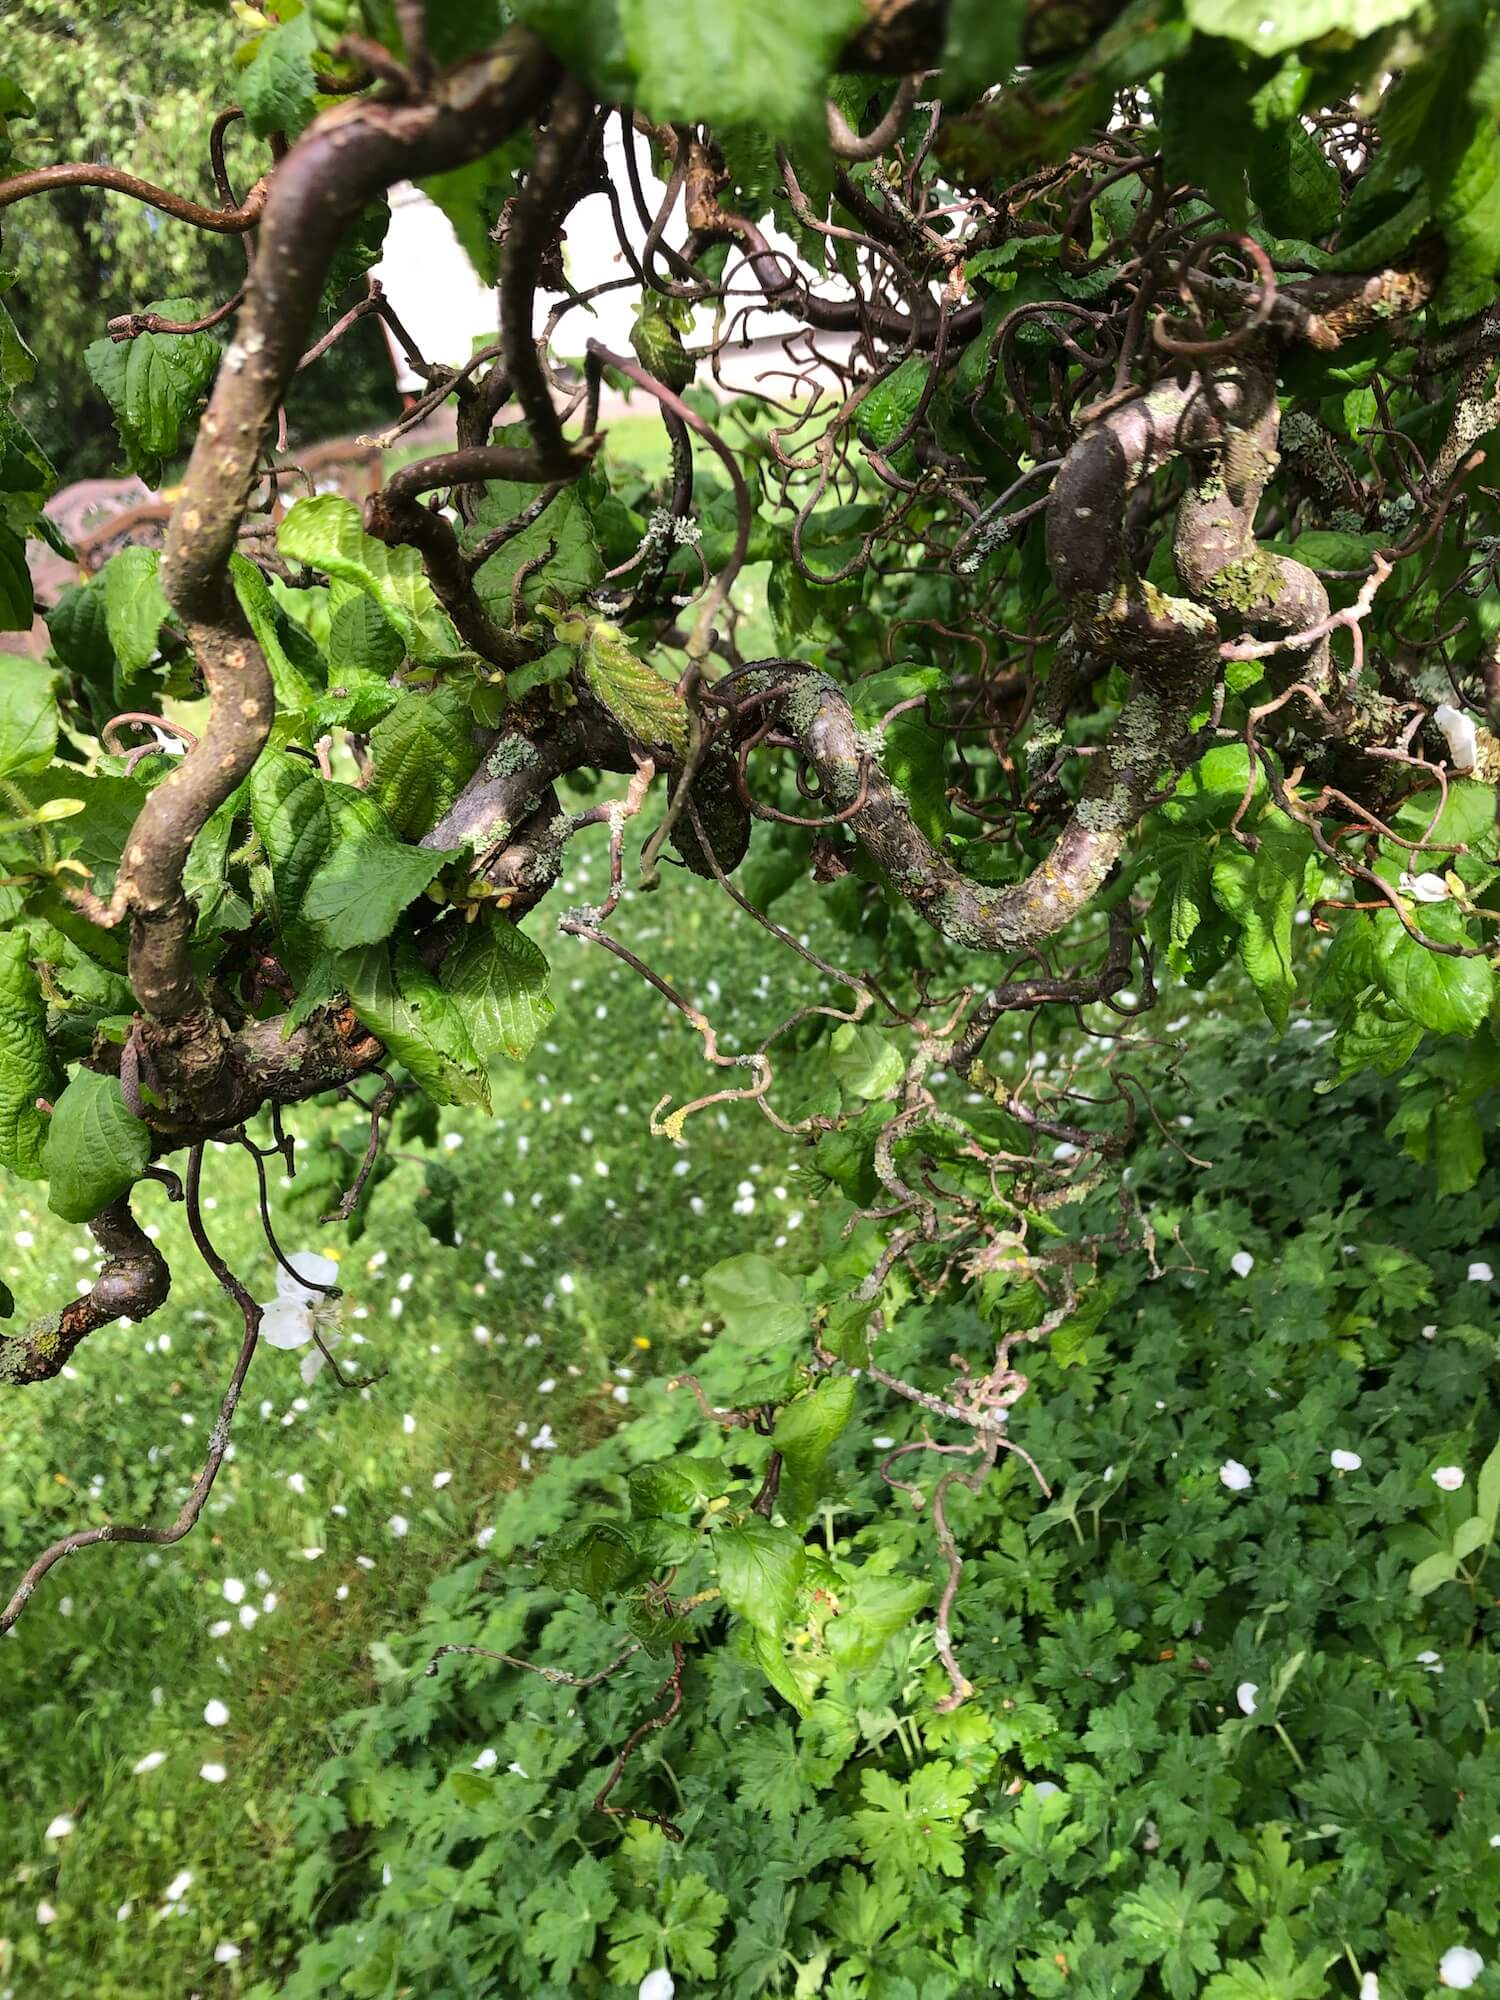 Peikonpähkinää Kukkahuone Linnean puutarhassa Tynnyrimiehen vaimon blogi